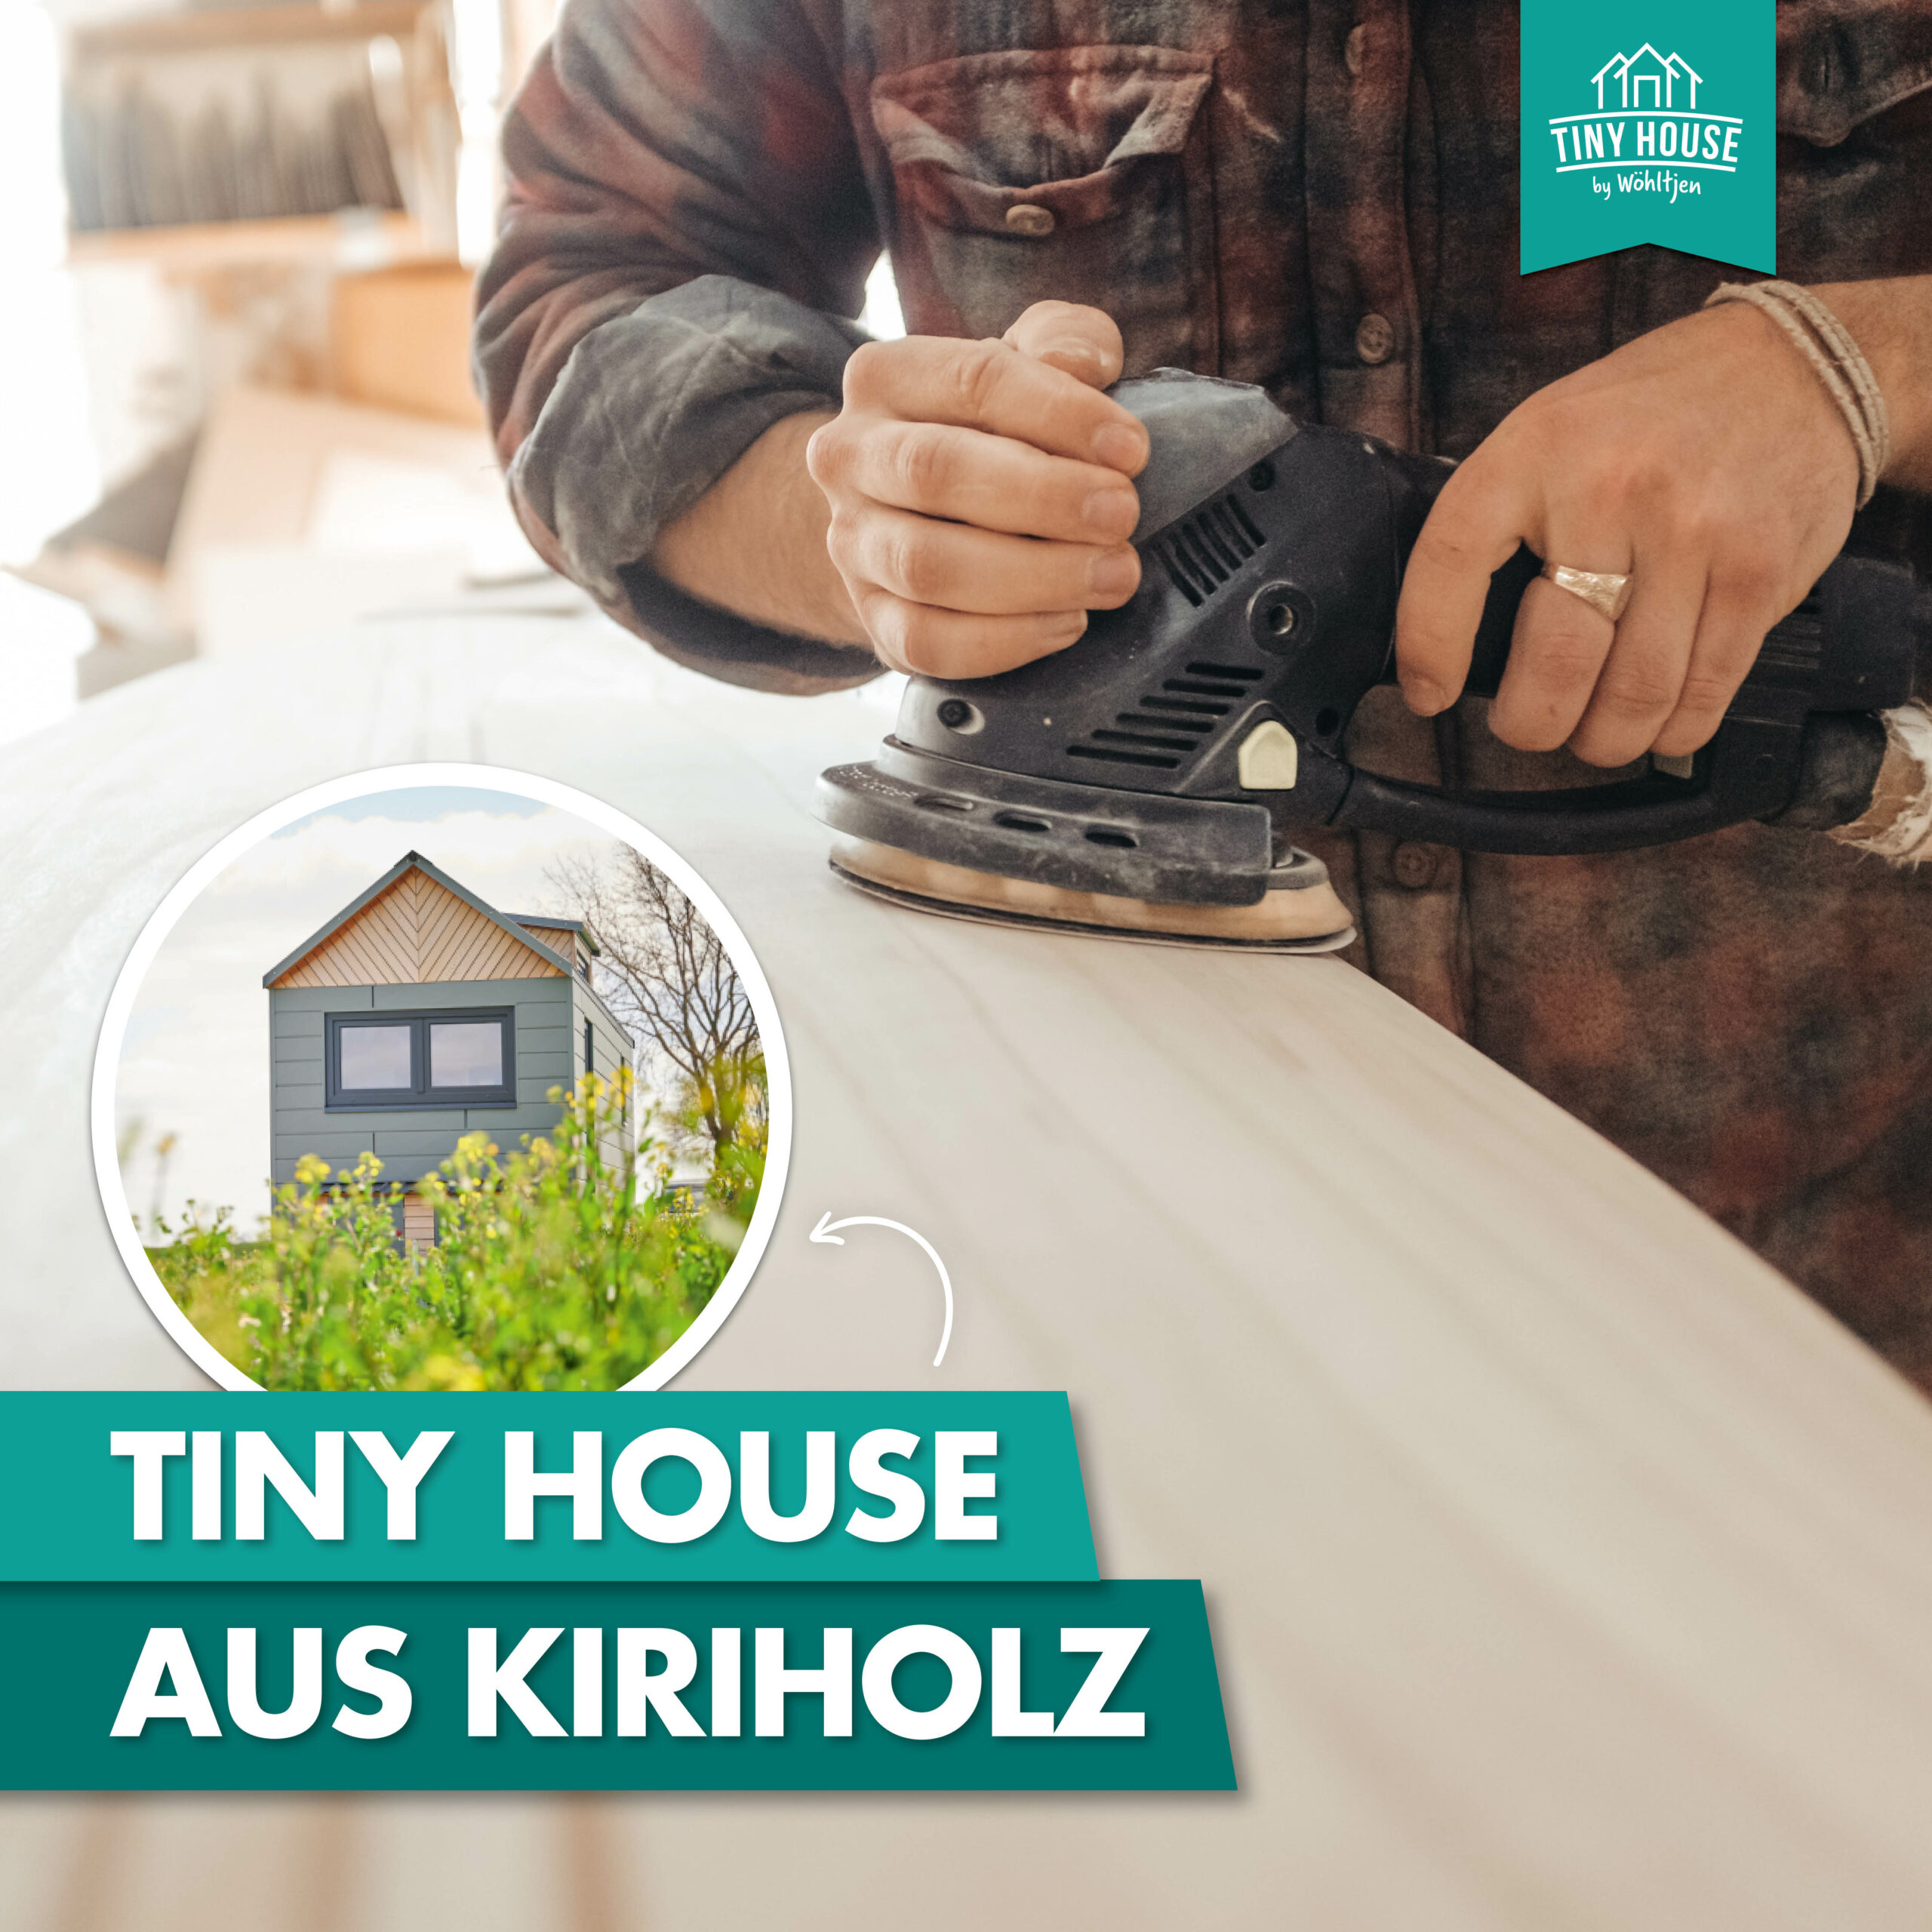 Tiny House kaufen bei Tiny House by Wöhltjen Kiriholz